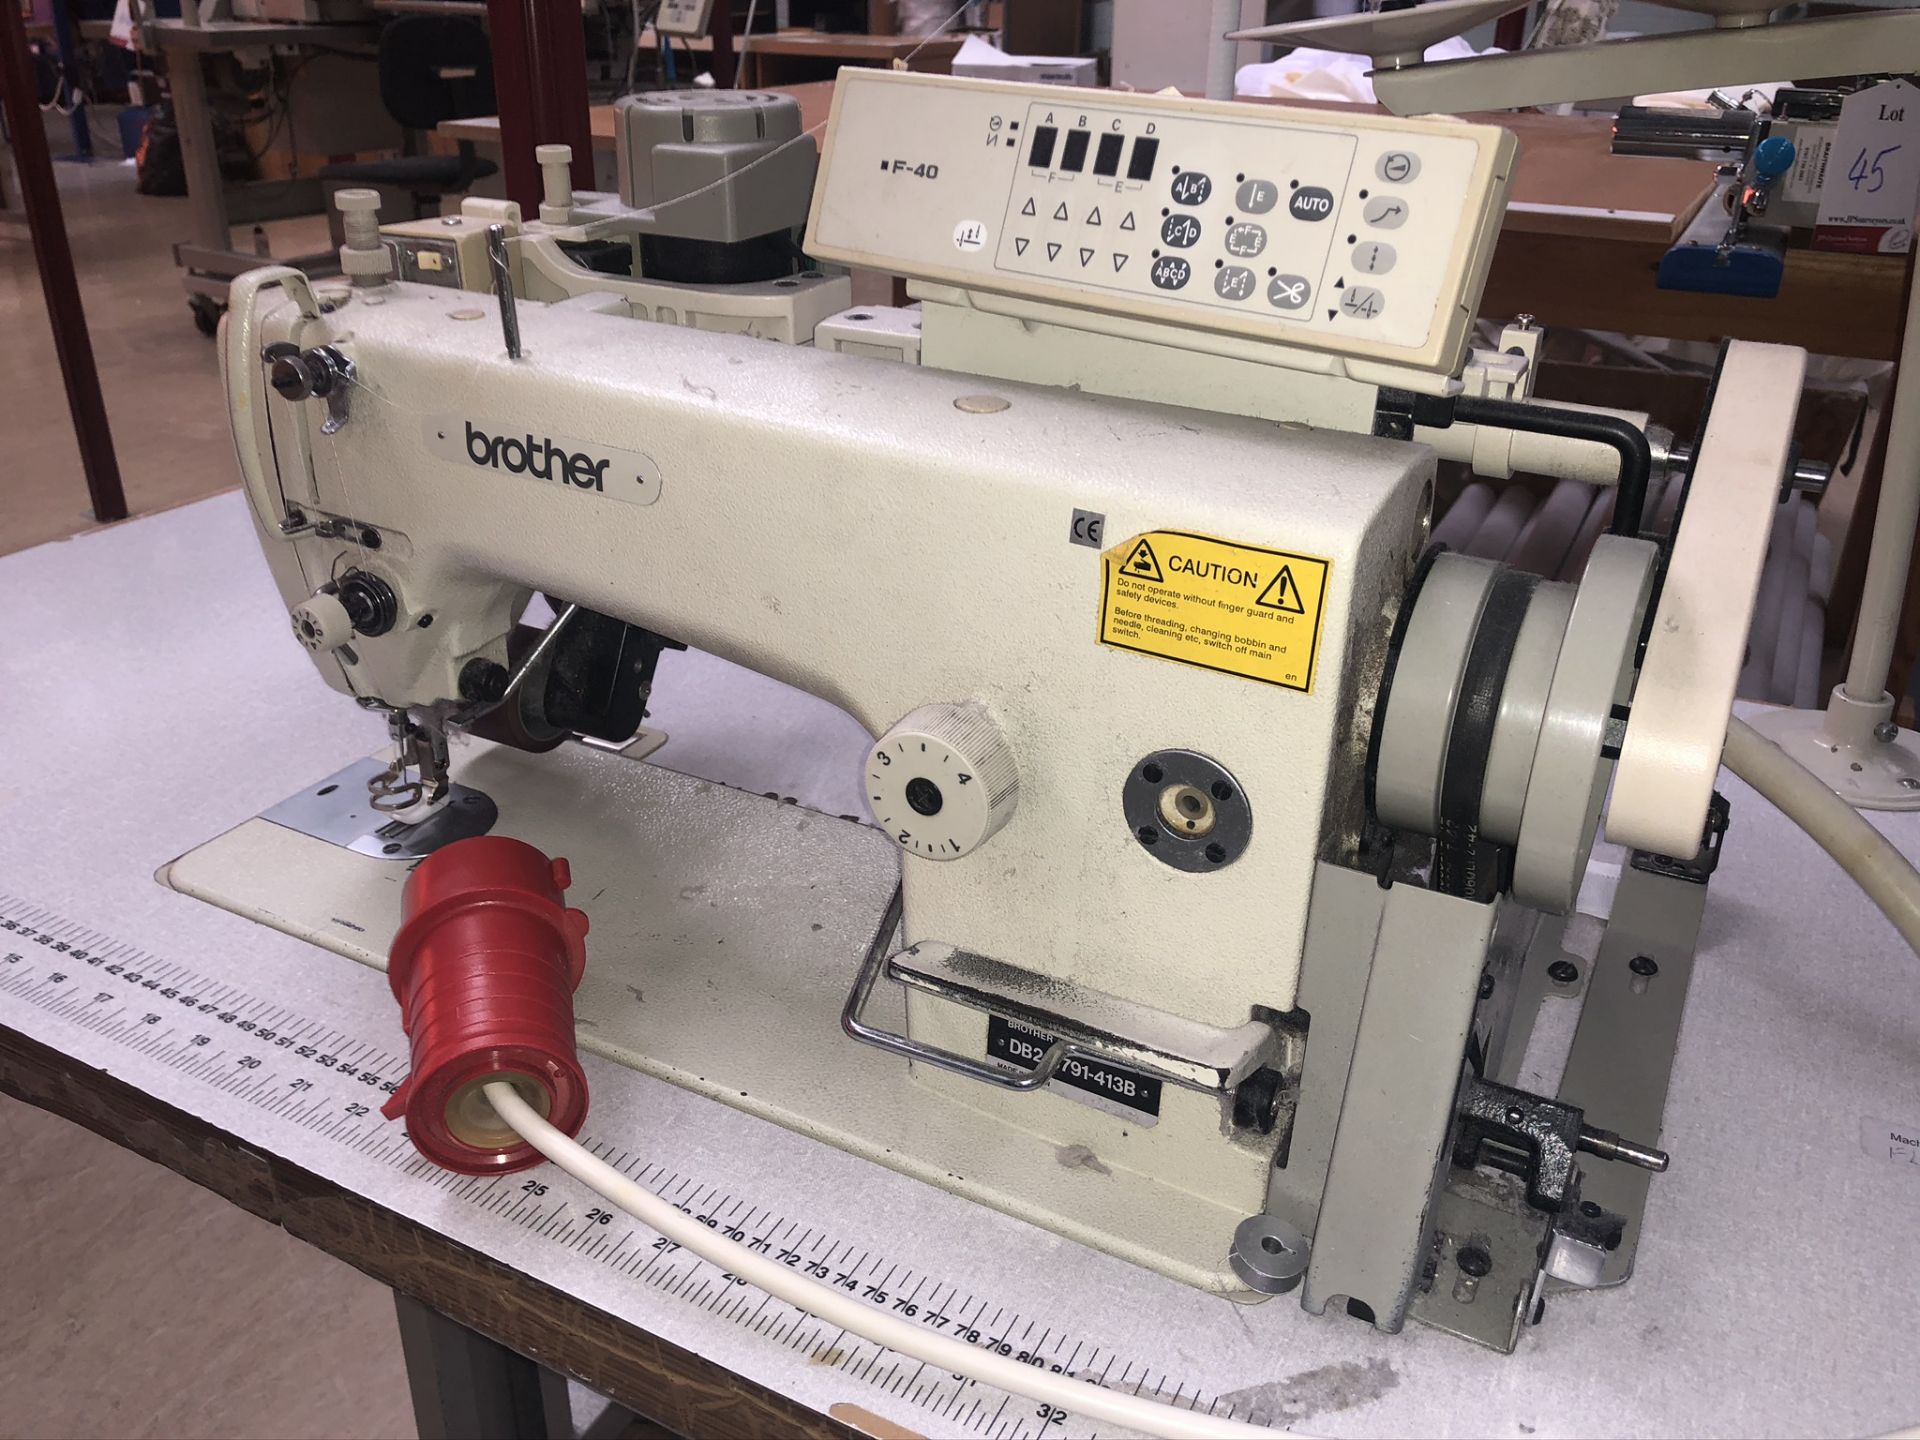 Brother DB2-B791-413B single needle lockstitch sewing machine w/ F40 control panel